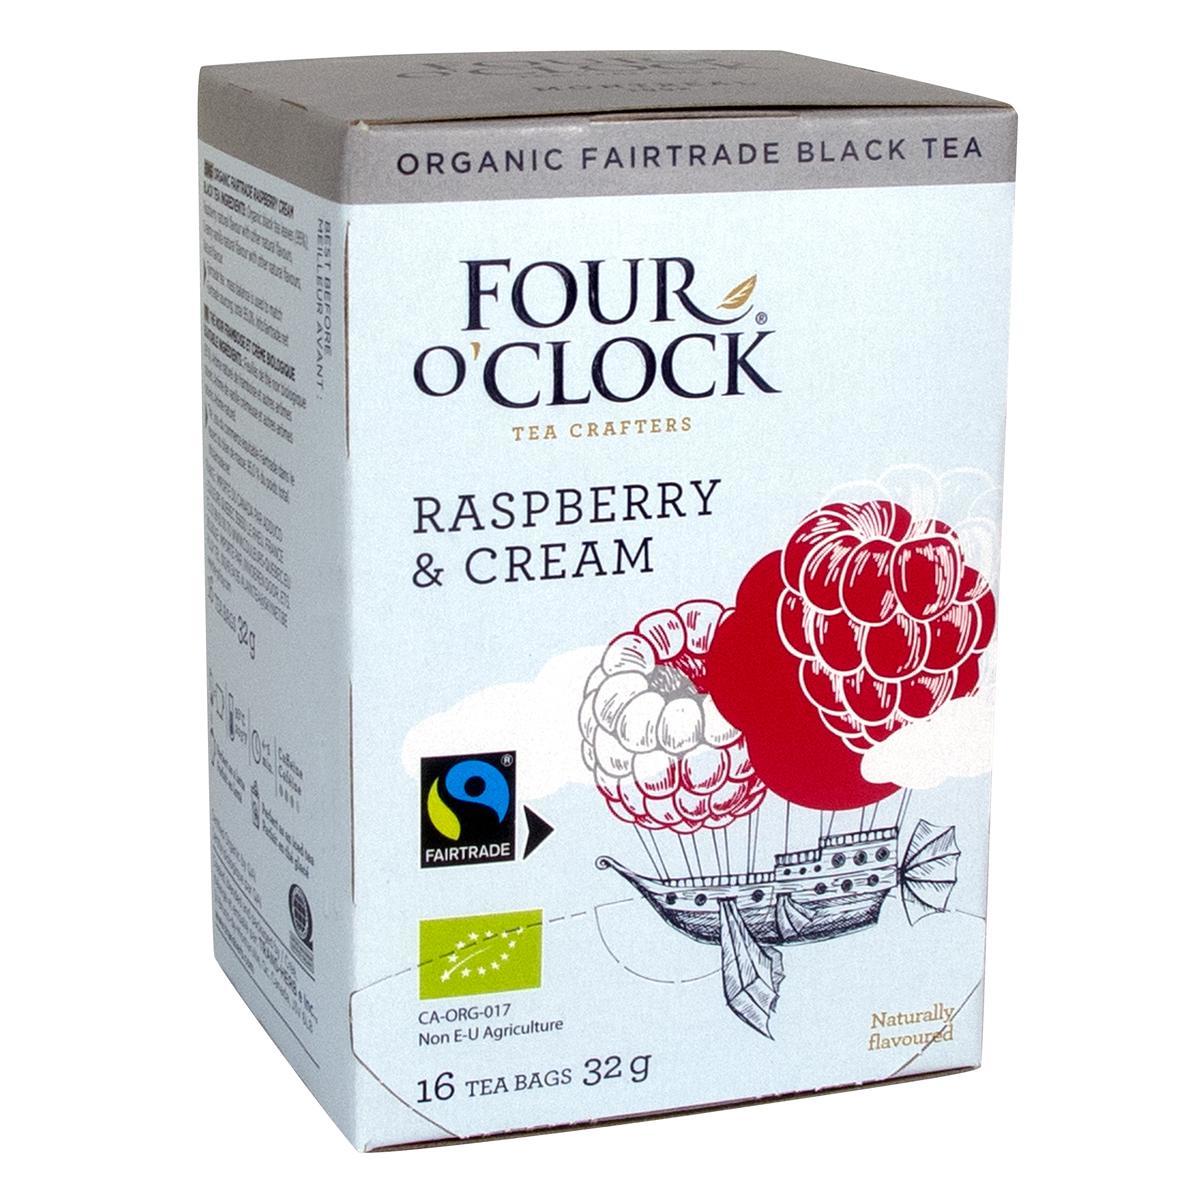 Four O’Clock's Four O'Clock RASPBERRY & CREAM'